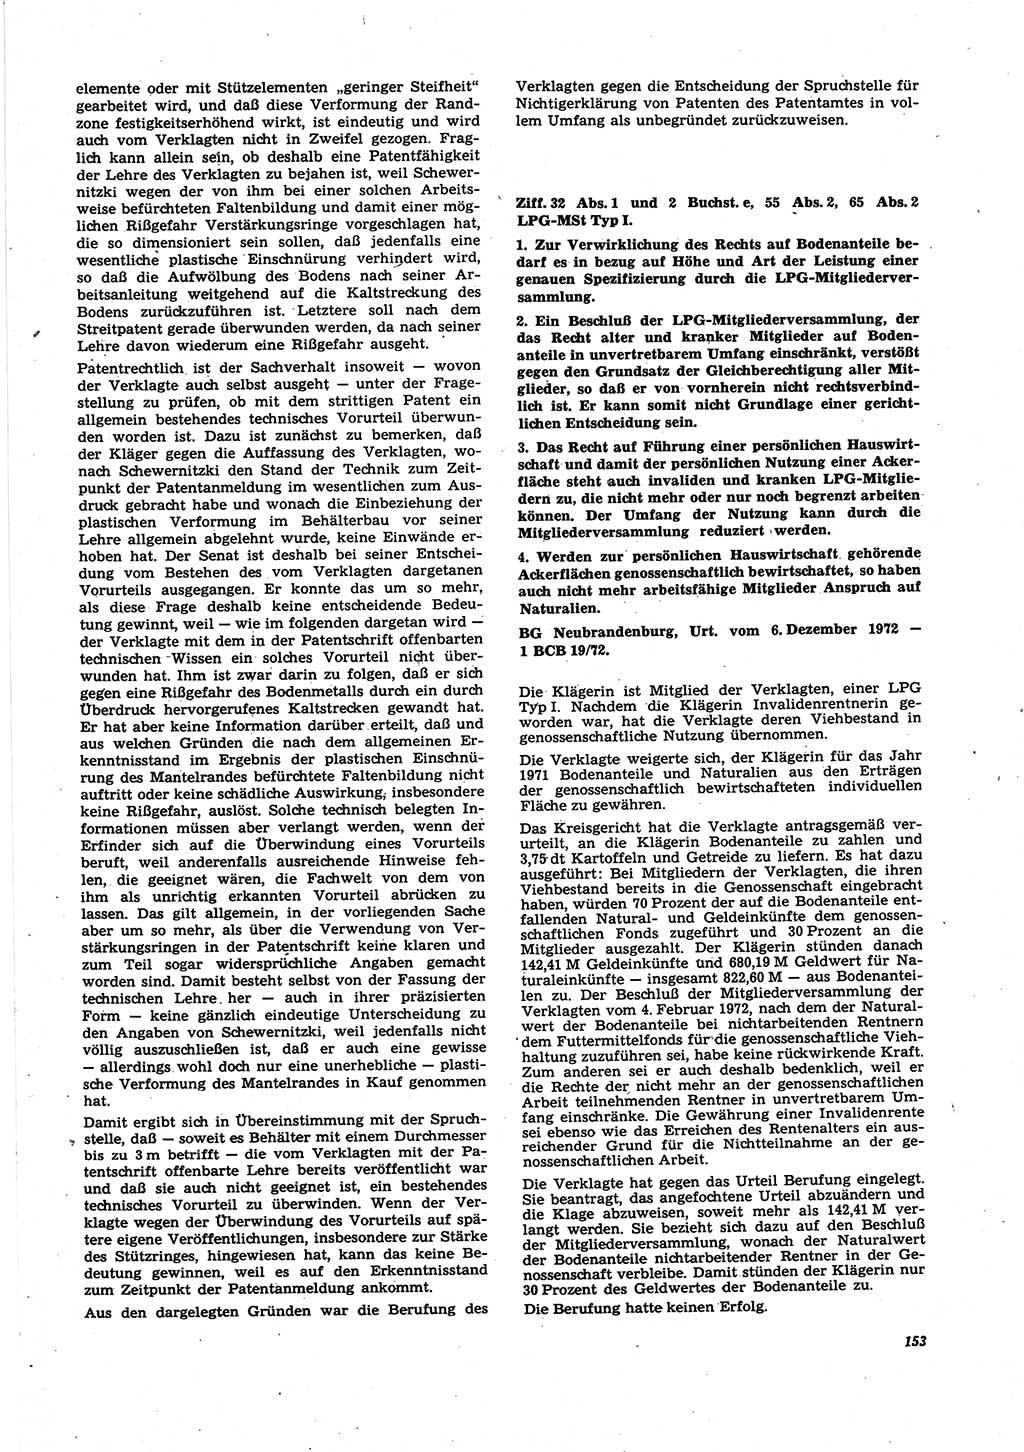 Neue Justiz (NJ), Zeitschrift für Recht und Rechtswissenschaft [Deutsche Demokratische Republik (DDR)], 27. Jahrgang 1973, Seite 153 (NJ DDR 1973, S. 153)